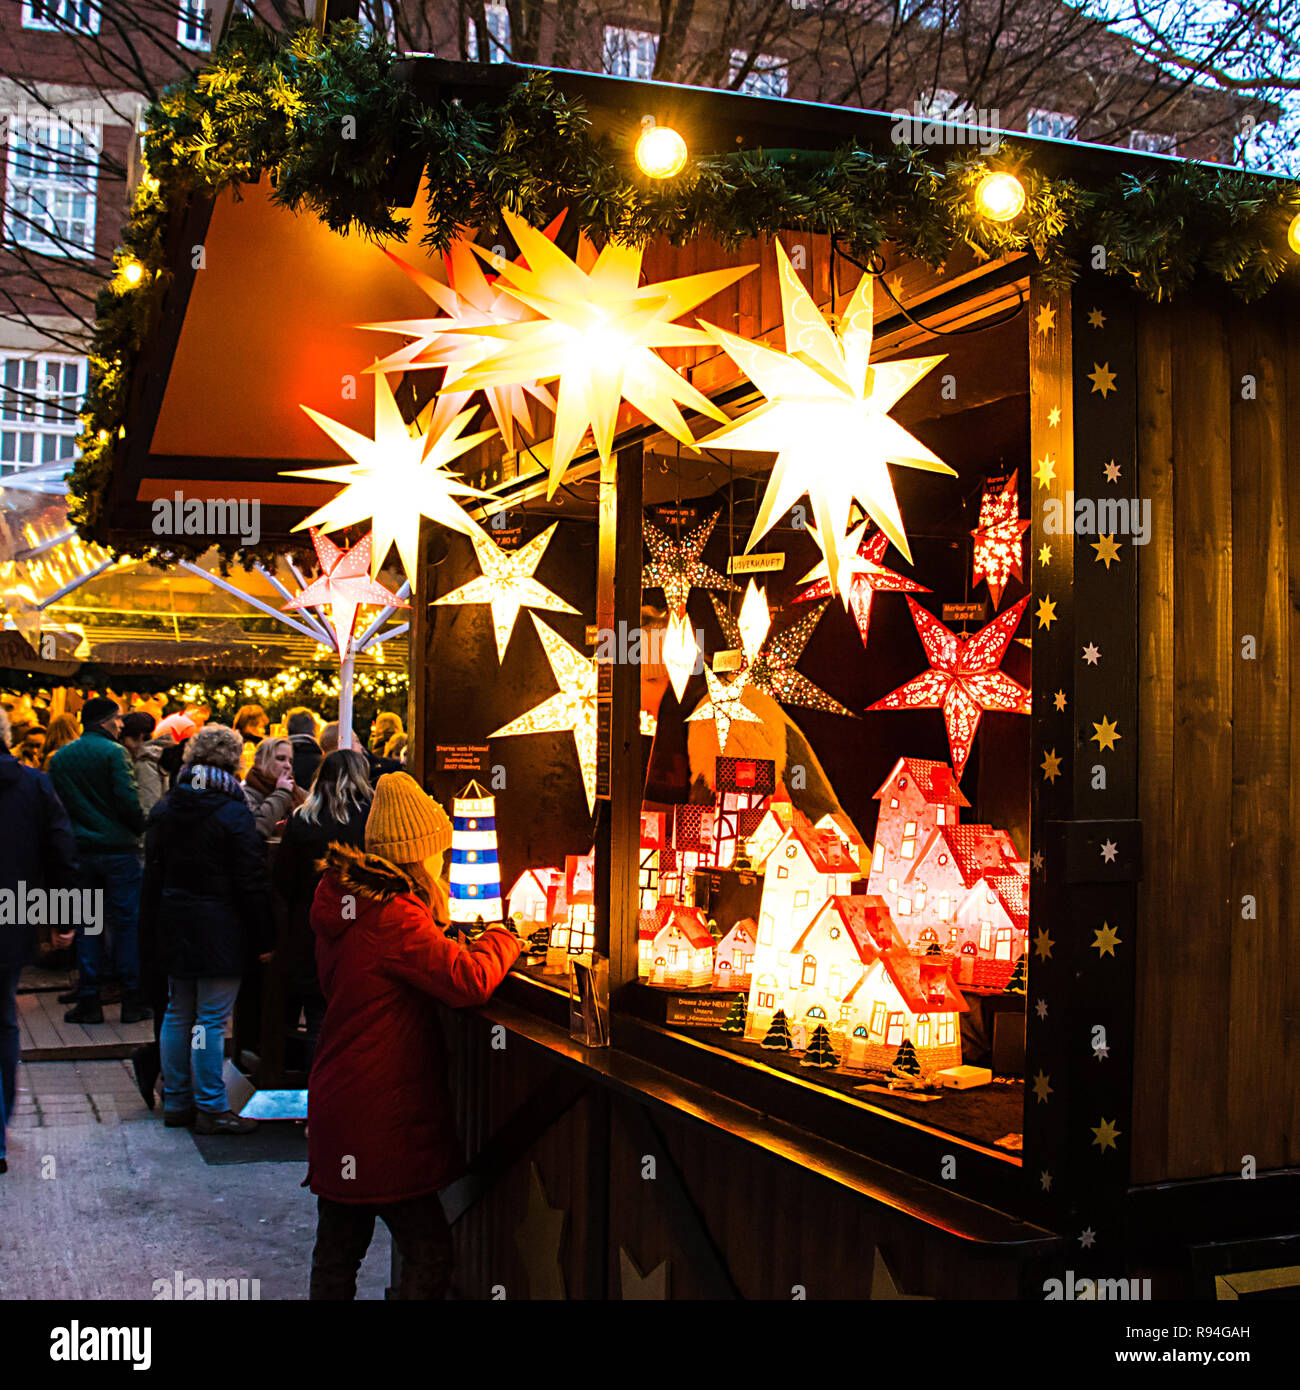 Una niña mira un puesto de venta de bonitas luces en forma de estrella, luz  de sombras y decoraciones en el mercado de Navidad de Munster, Alemania  Fotografía de stock - Alamy